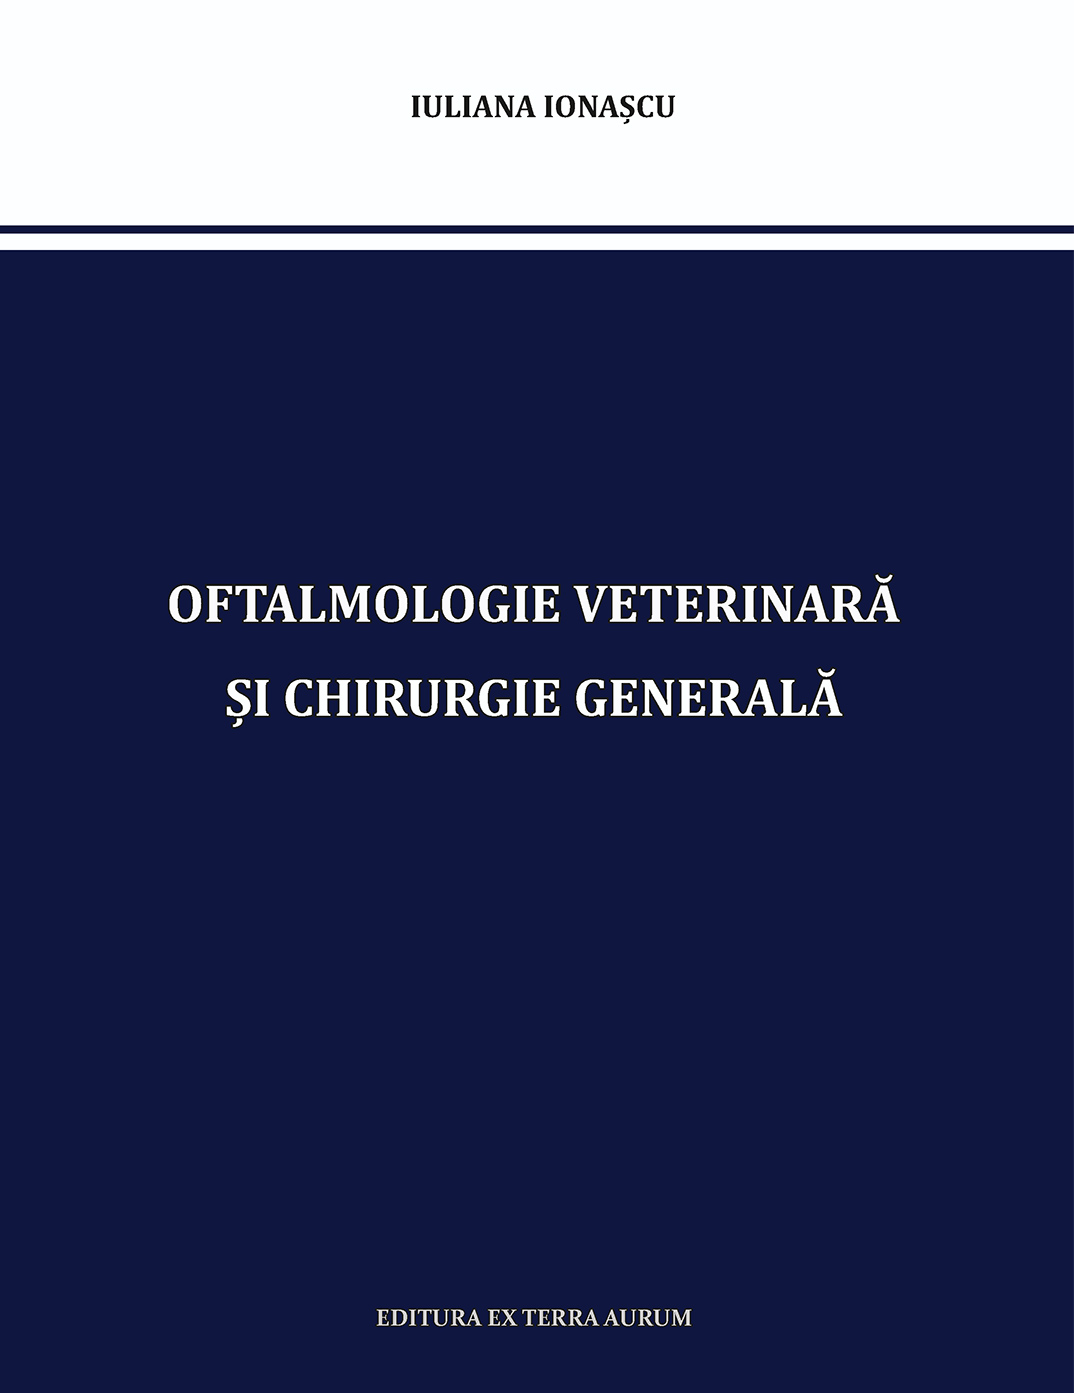 Oftalmologie Veterinară și Chirurgie Generală